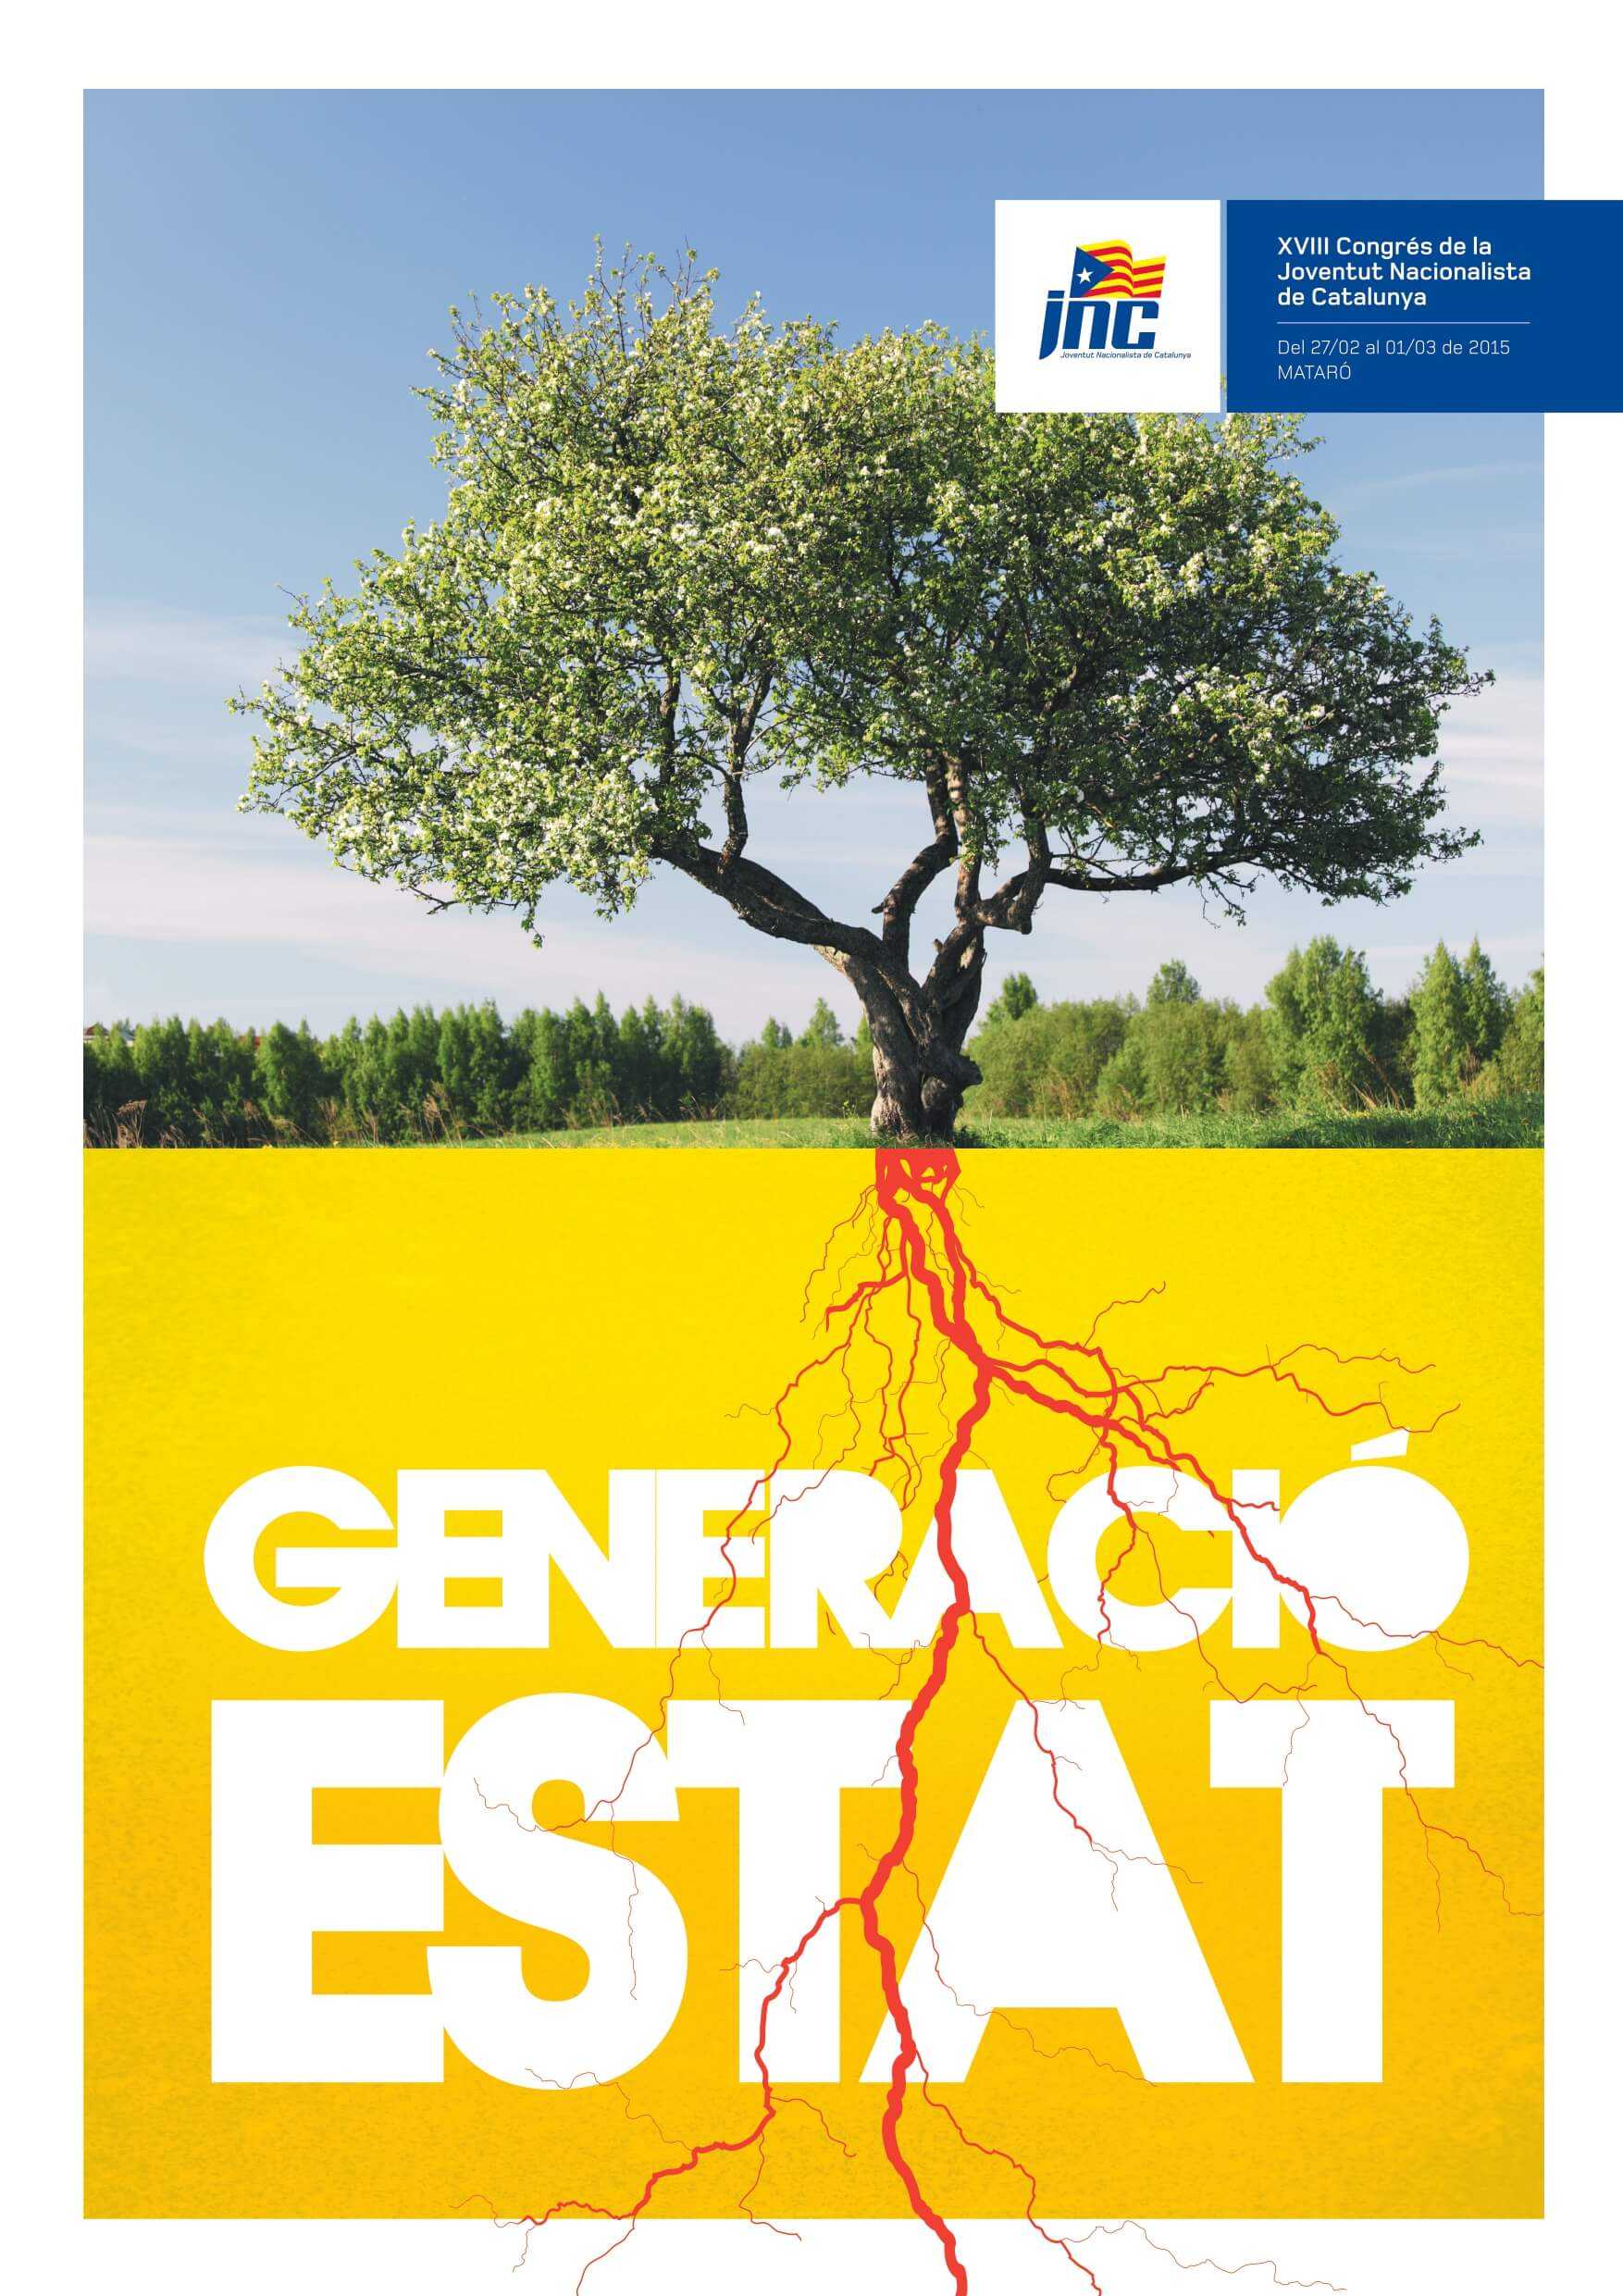 2015 - Generació estat